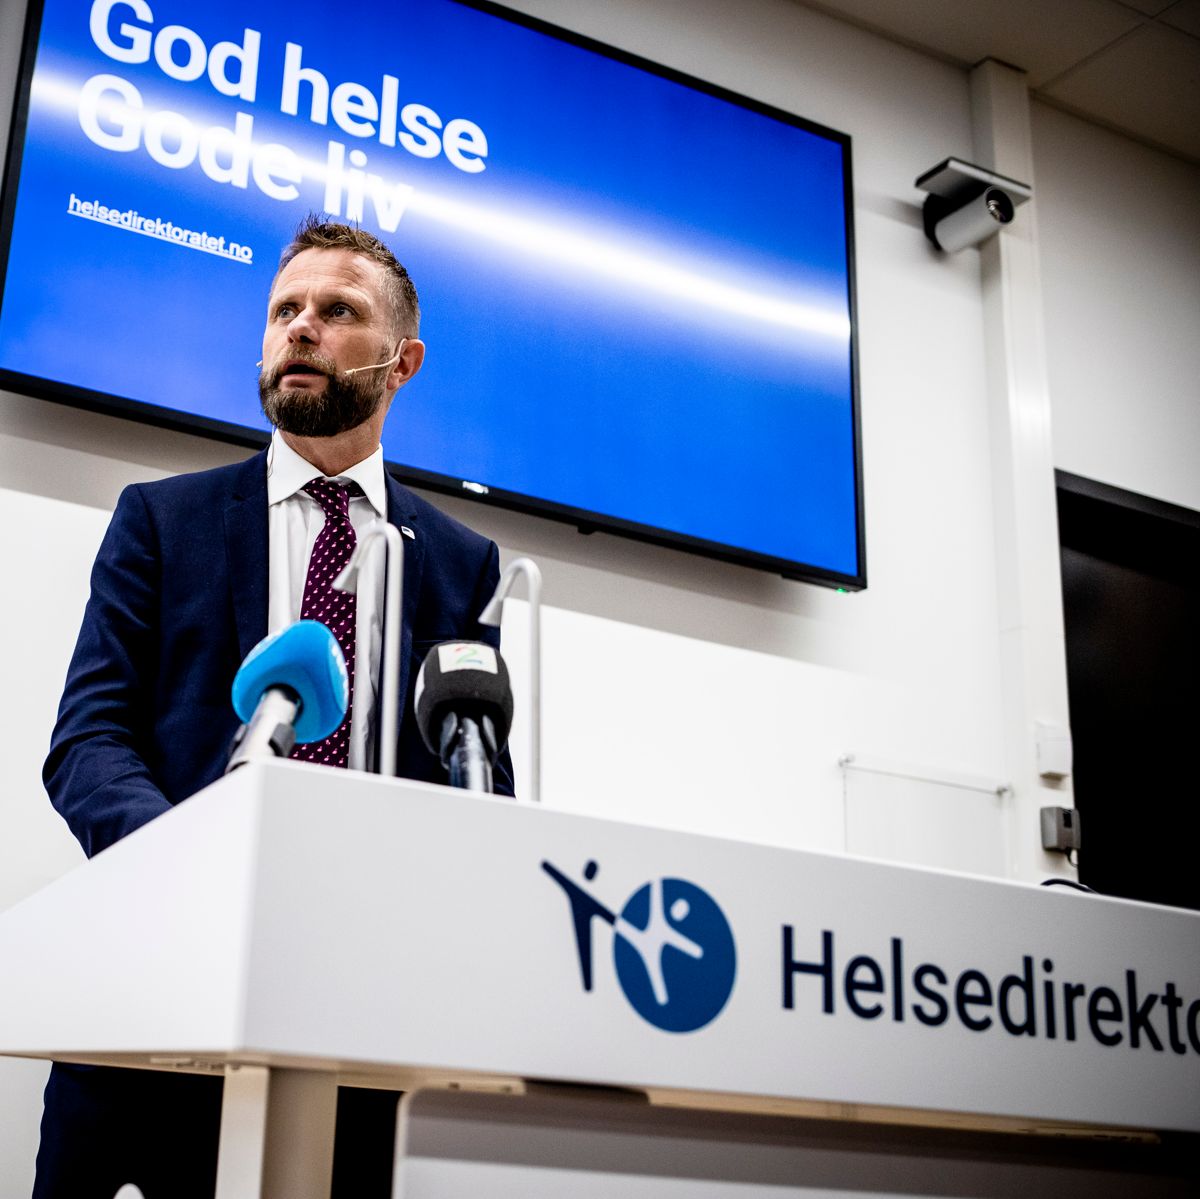 Gode tilbakemeldinger gjør at helseminister Bent Høie (H) vil utvide prøveordningen med primærhelseteam. Foto: Magnus Knutsen Bjørke